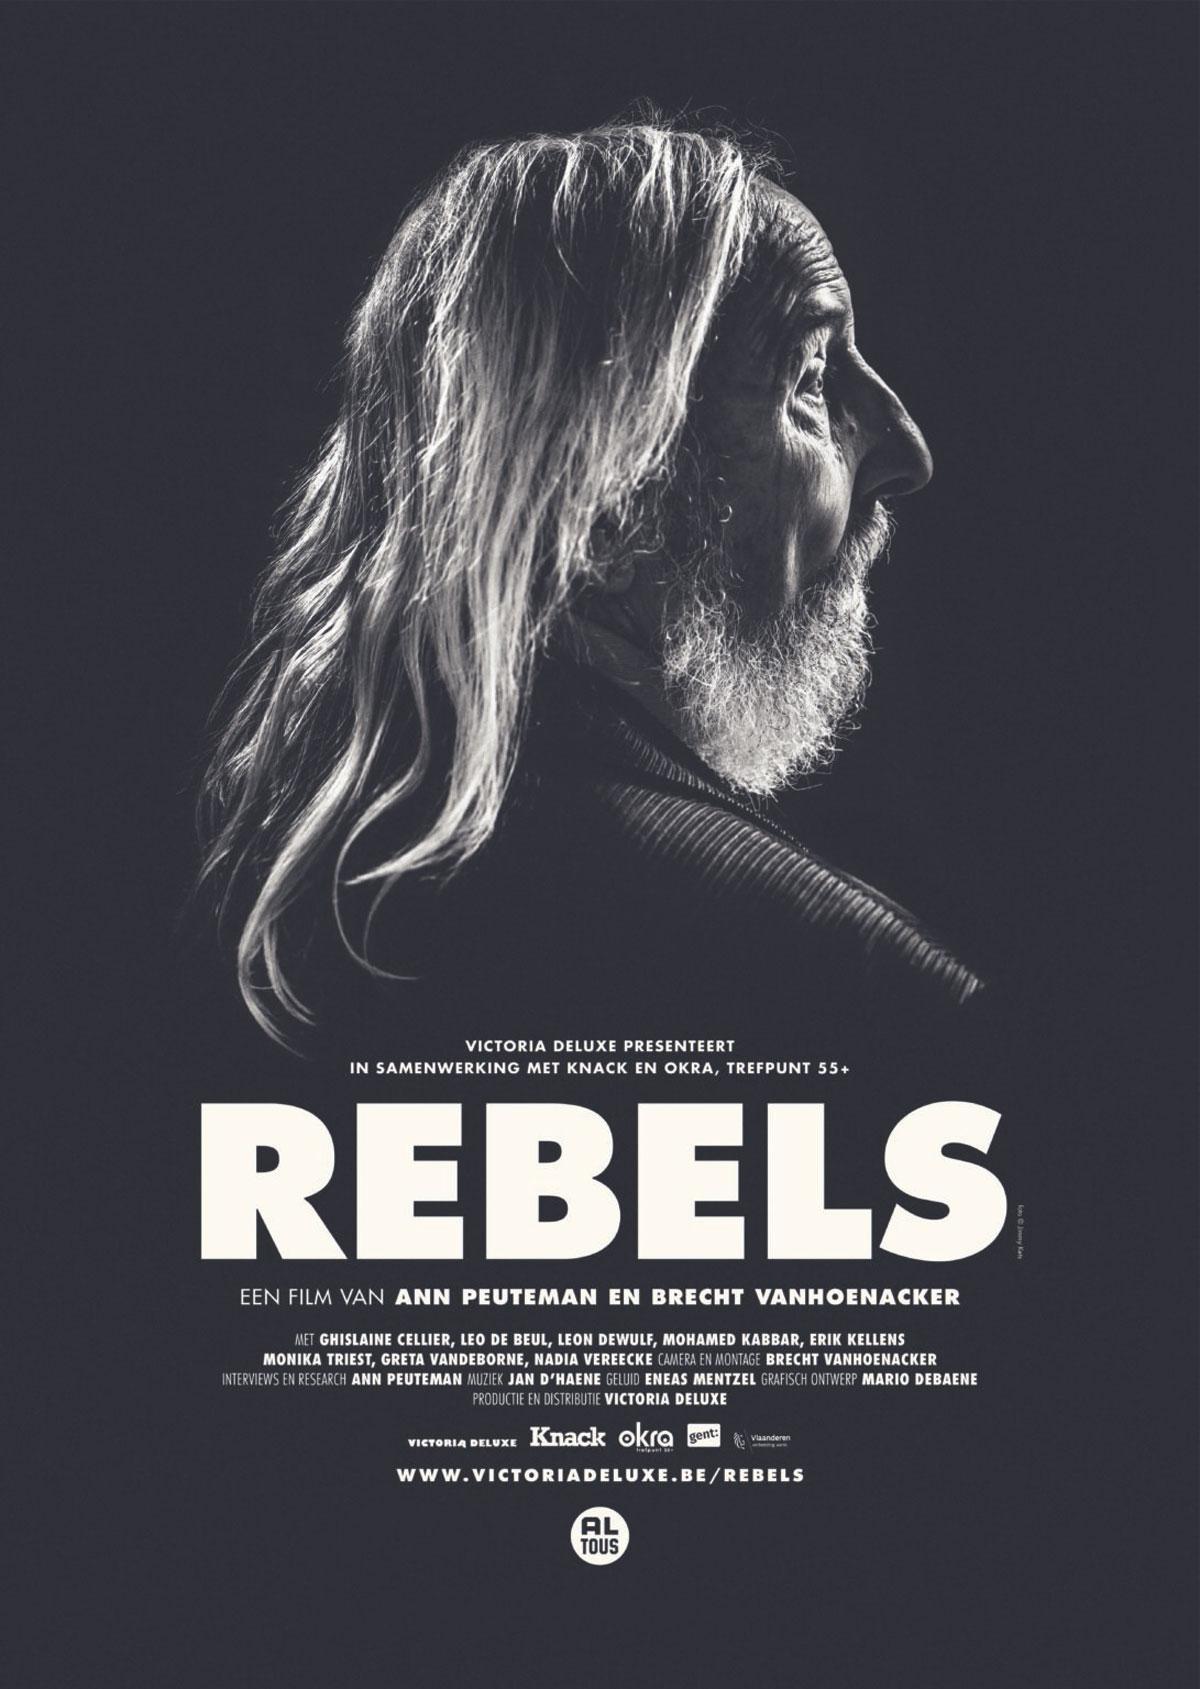 Rebels, een documentaire van Ann Peuteman en Brecht Vanhoenacker, draait vanaf november in de zalen. Info: www.victoriadeluxe.be/Rebels